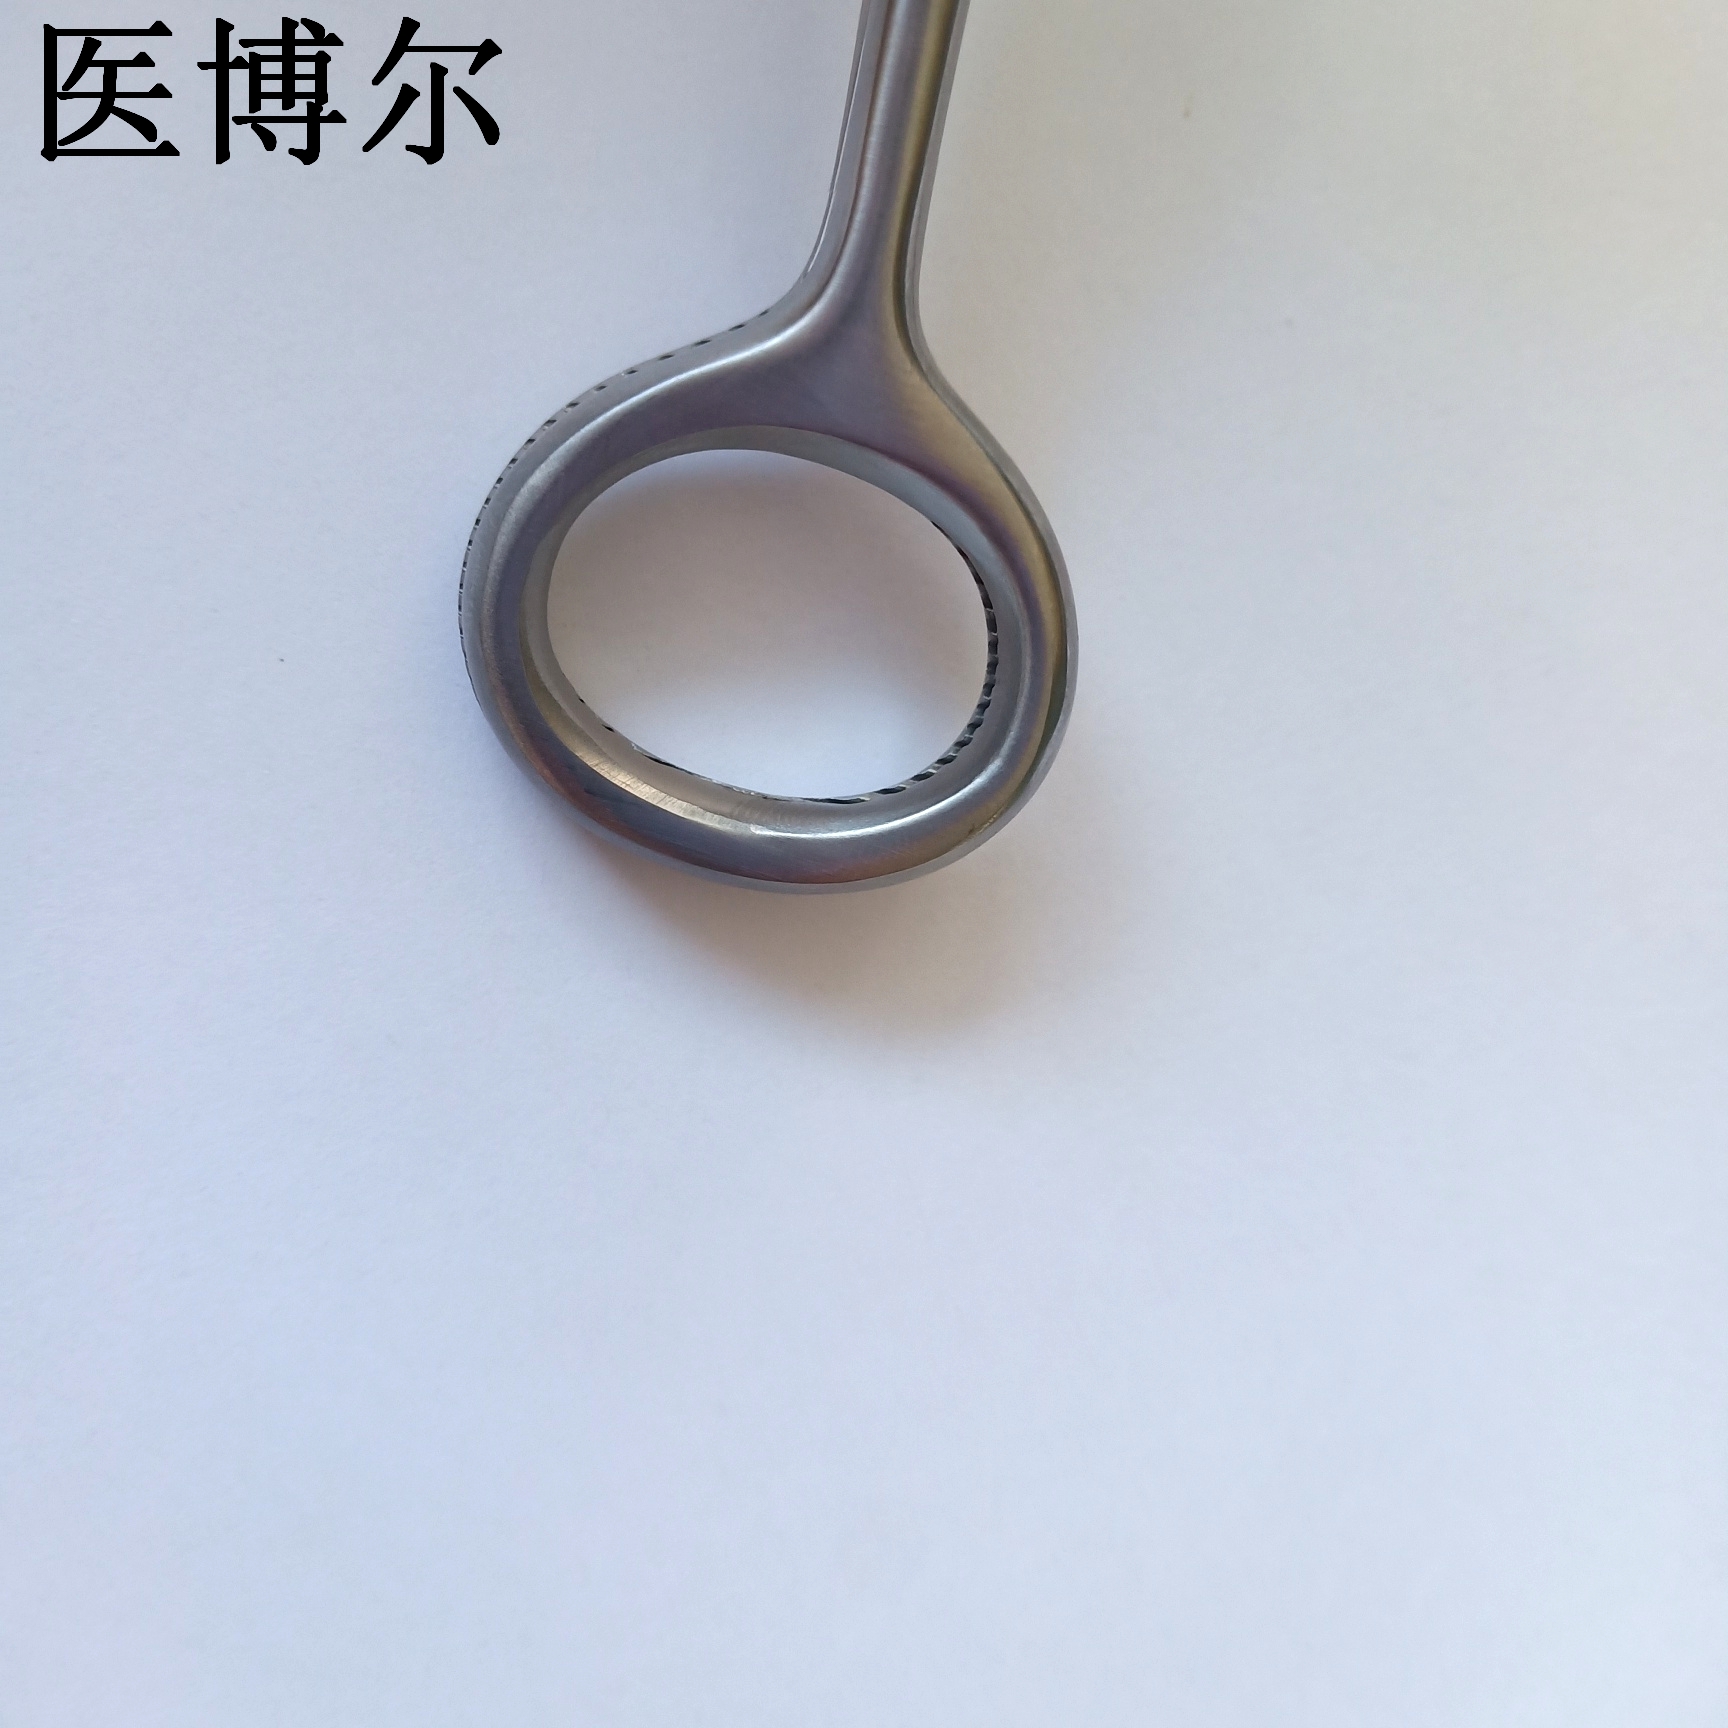 20cm舌钳 (7)_看图王.jpg